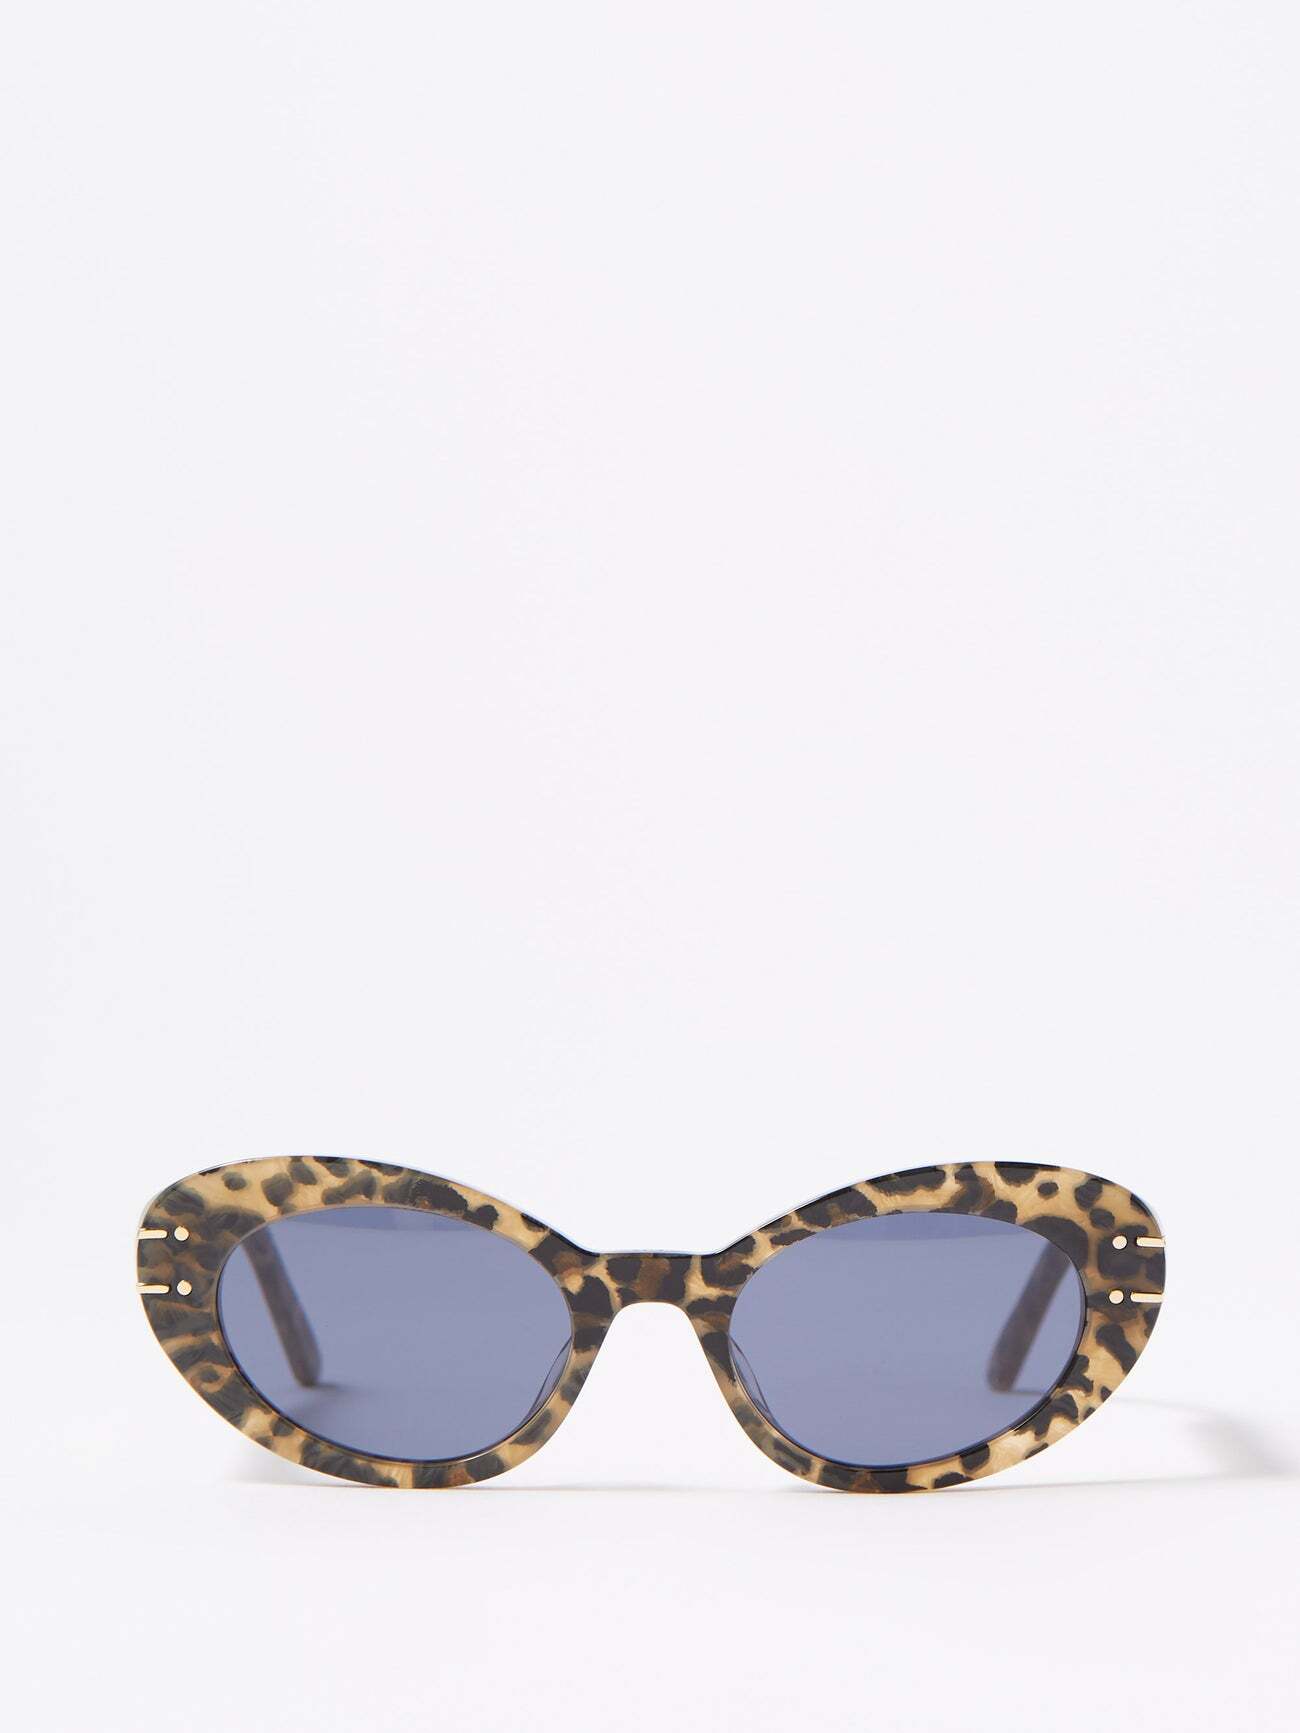 Dior - Diorsignature B3u Cat-eye Acetate Sunglasses - Womens - Beige Multi